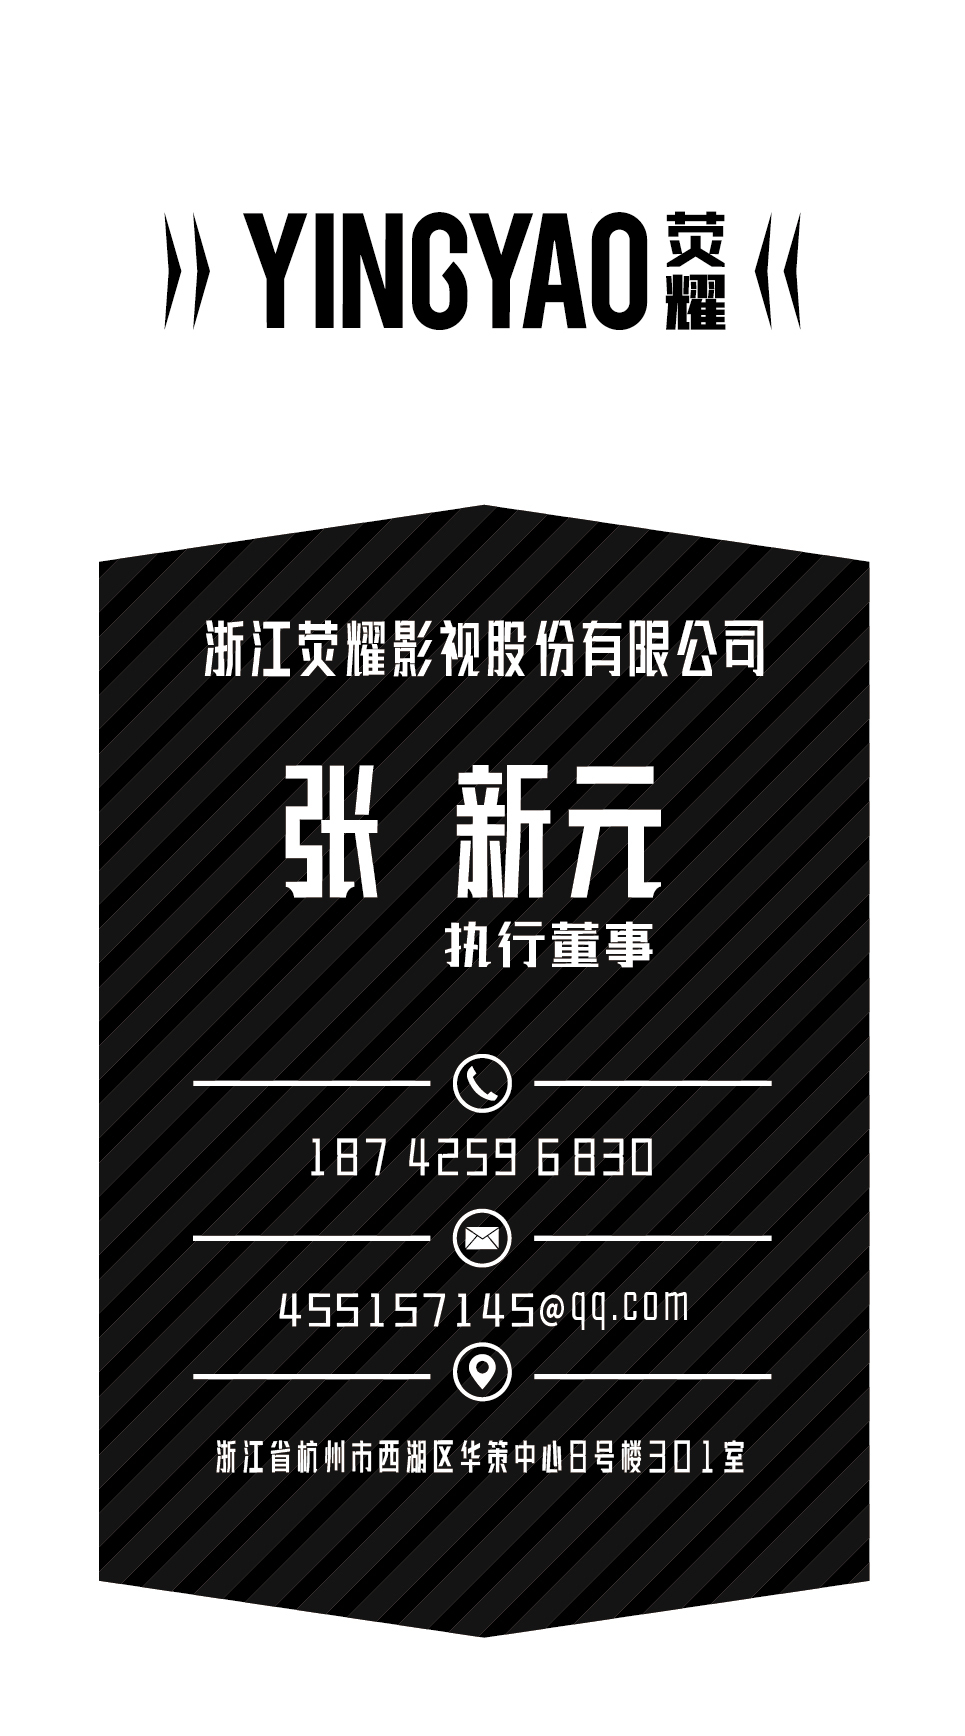 浙江荧耀影视股份有限公司-名片设计图1